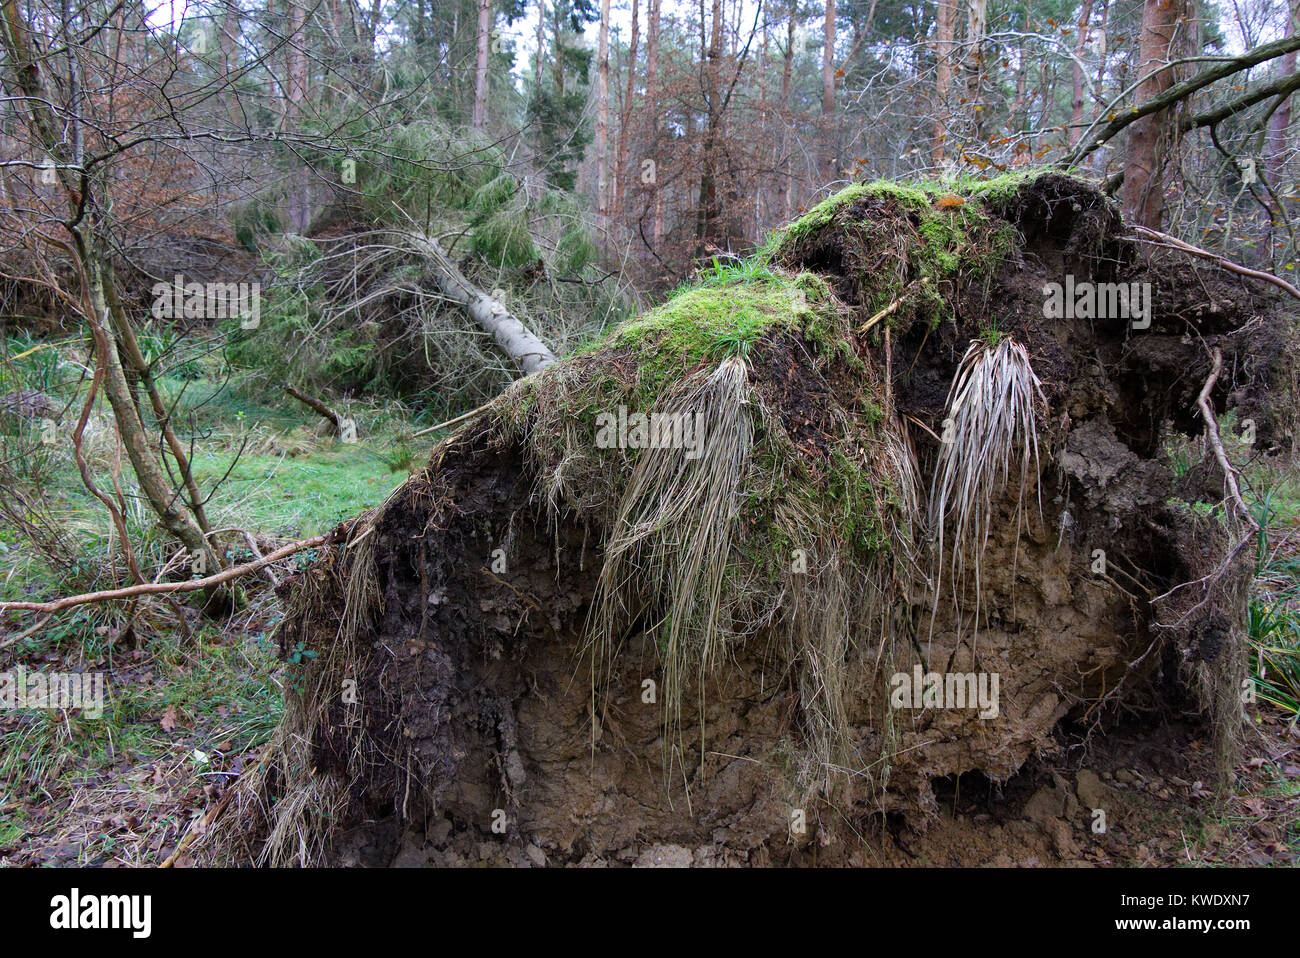 Gefallenen Baum im Wald mit großen erdscholle, die von den Wurzeln herausgerissen, Broxbourne Woods, UK, Winter Stockfoto